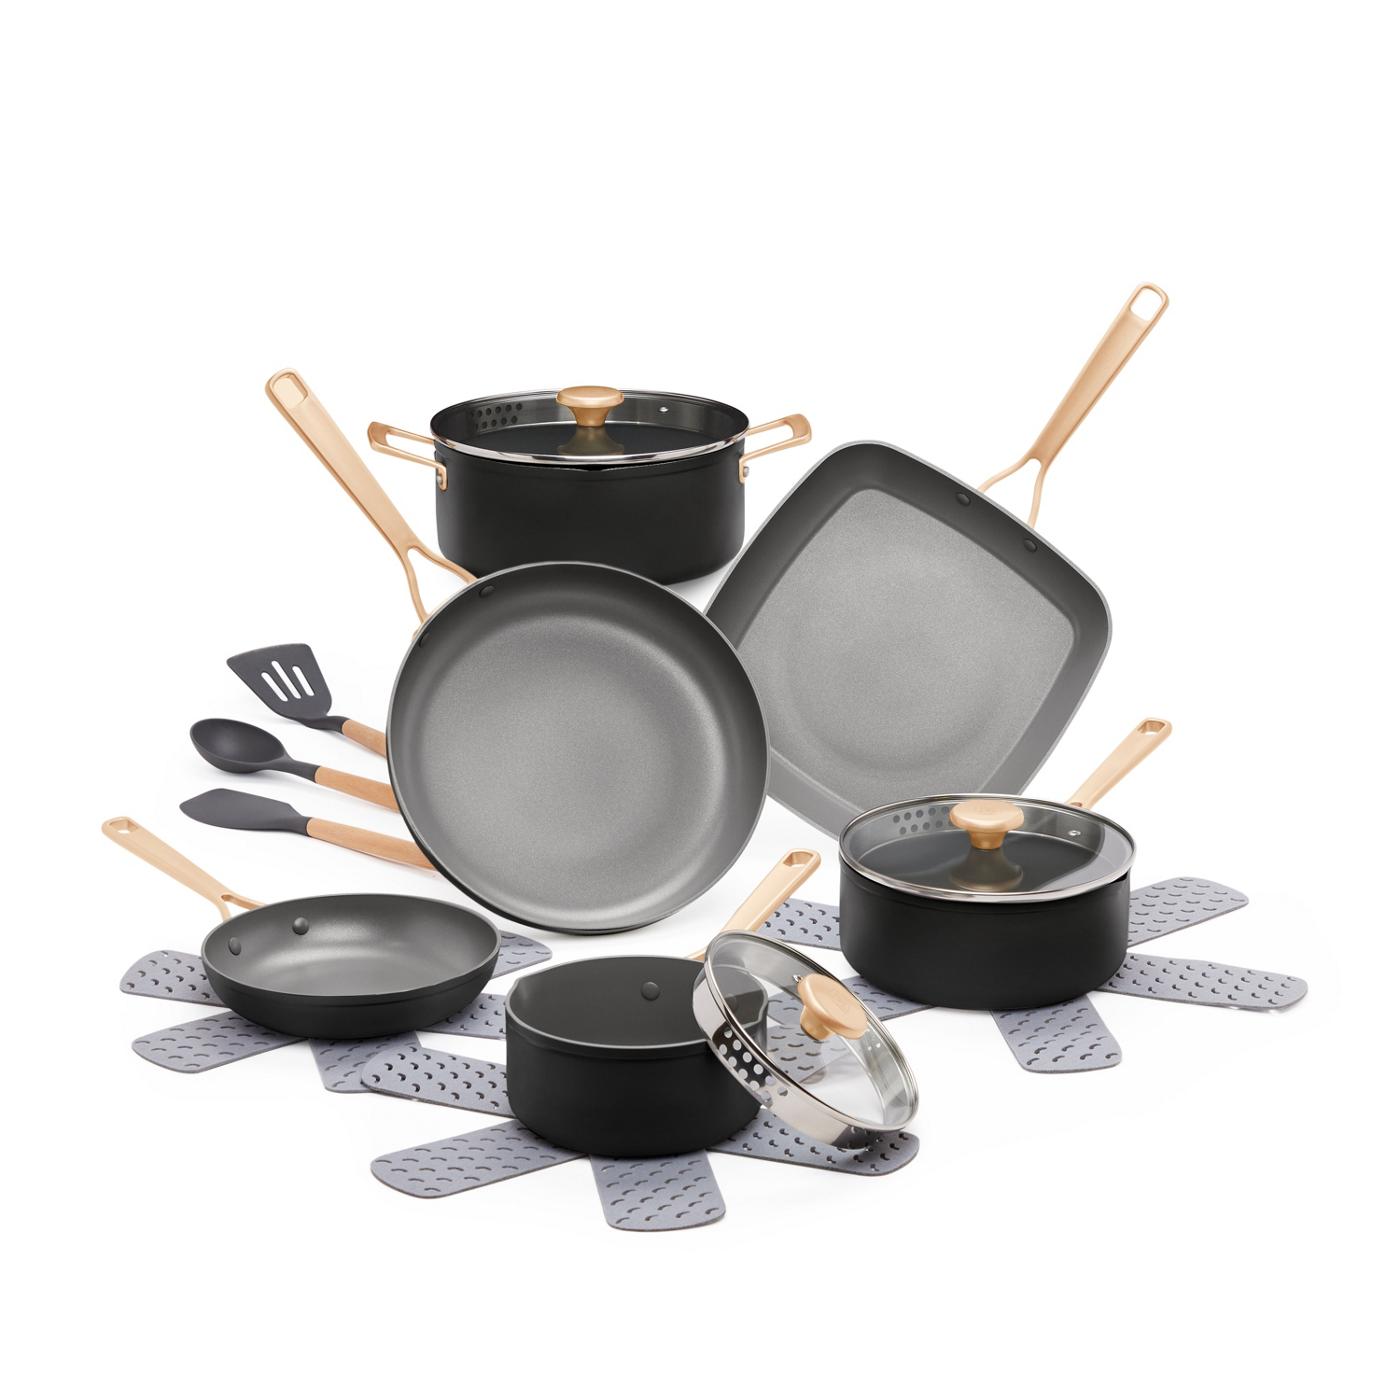 Nonstick Cookware Sets